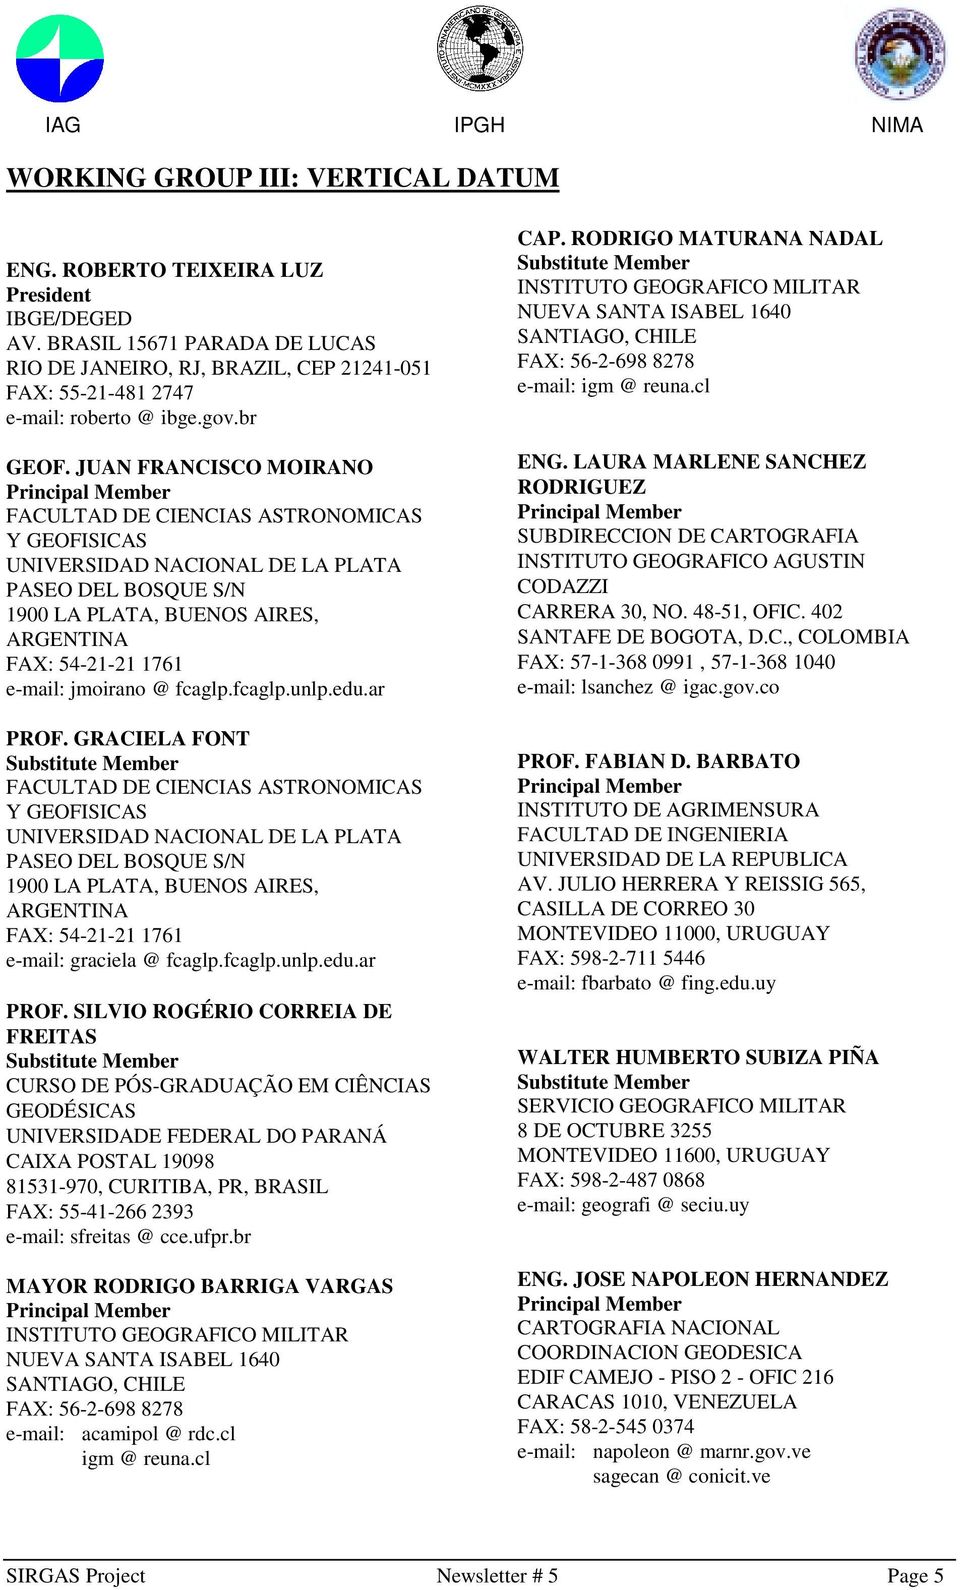 JUAN FRANCISCO MOIRANO Principal Member FACULTAD DE CIENCIAS ASTRONOMICAS Y GEOFISICAS UNIVERSIDAD NACIONAL DE LA PLATA PASEO DEL BOSQUE S/N 1900 LA PLATA, BUENOS AIRES, ARGENTINA FAX: 54-21-21 1761